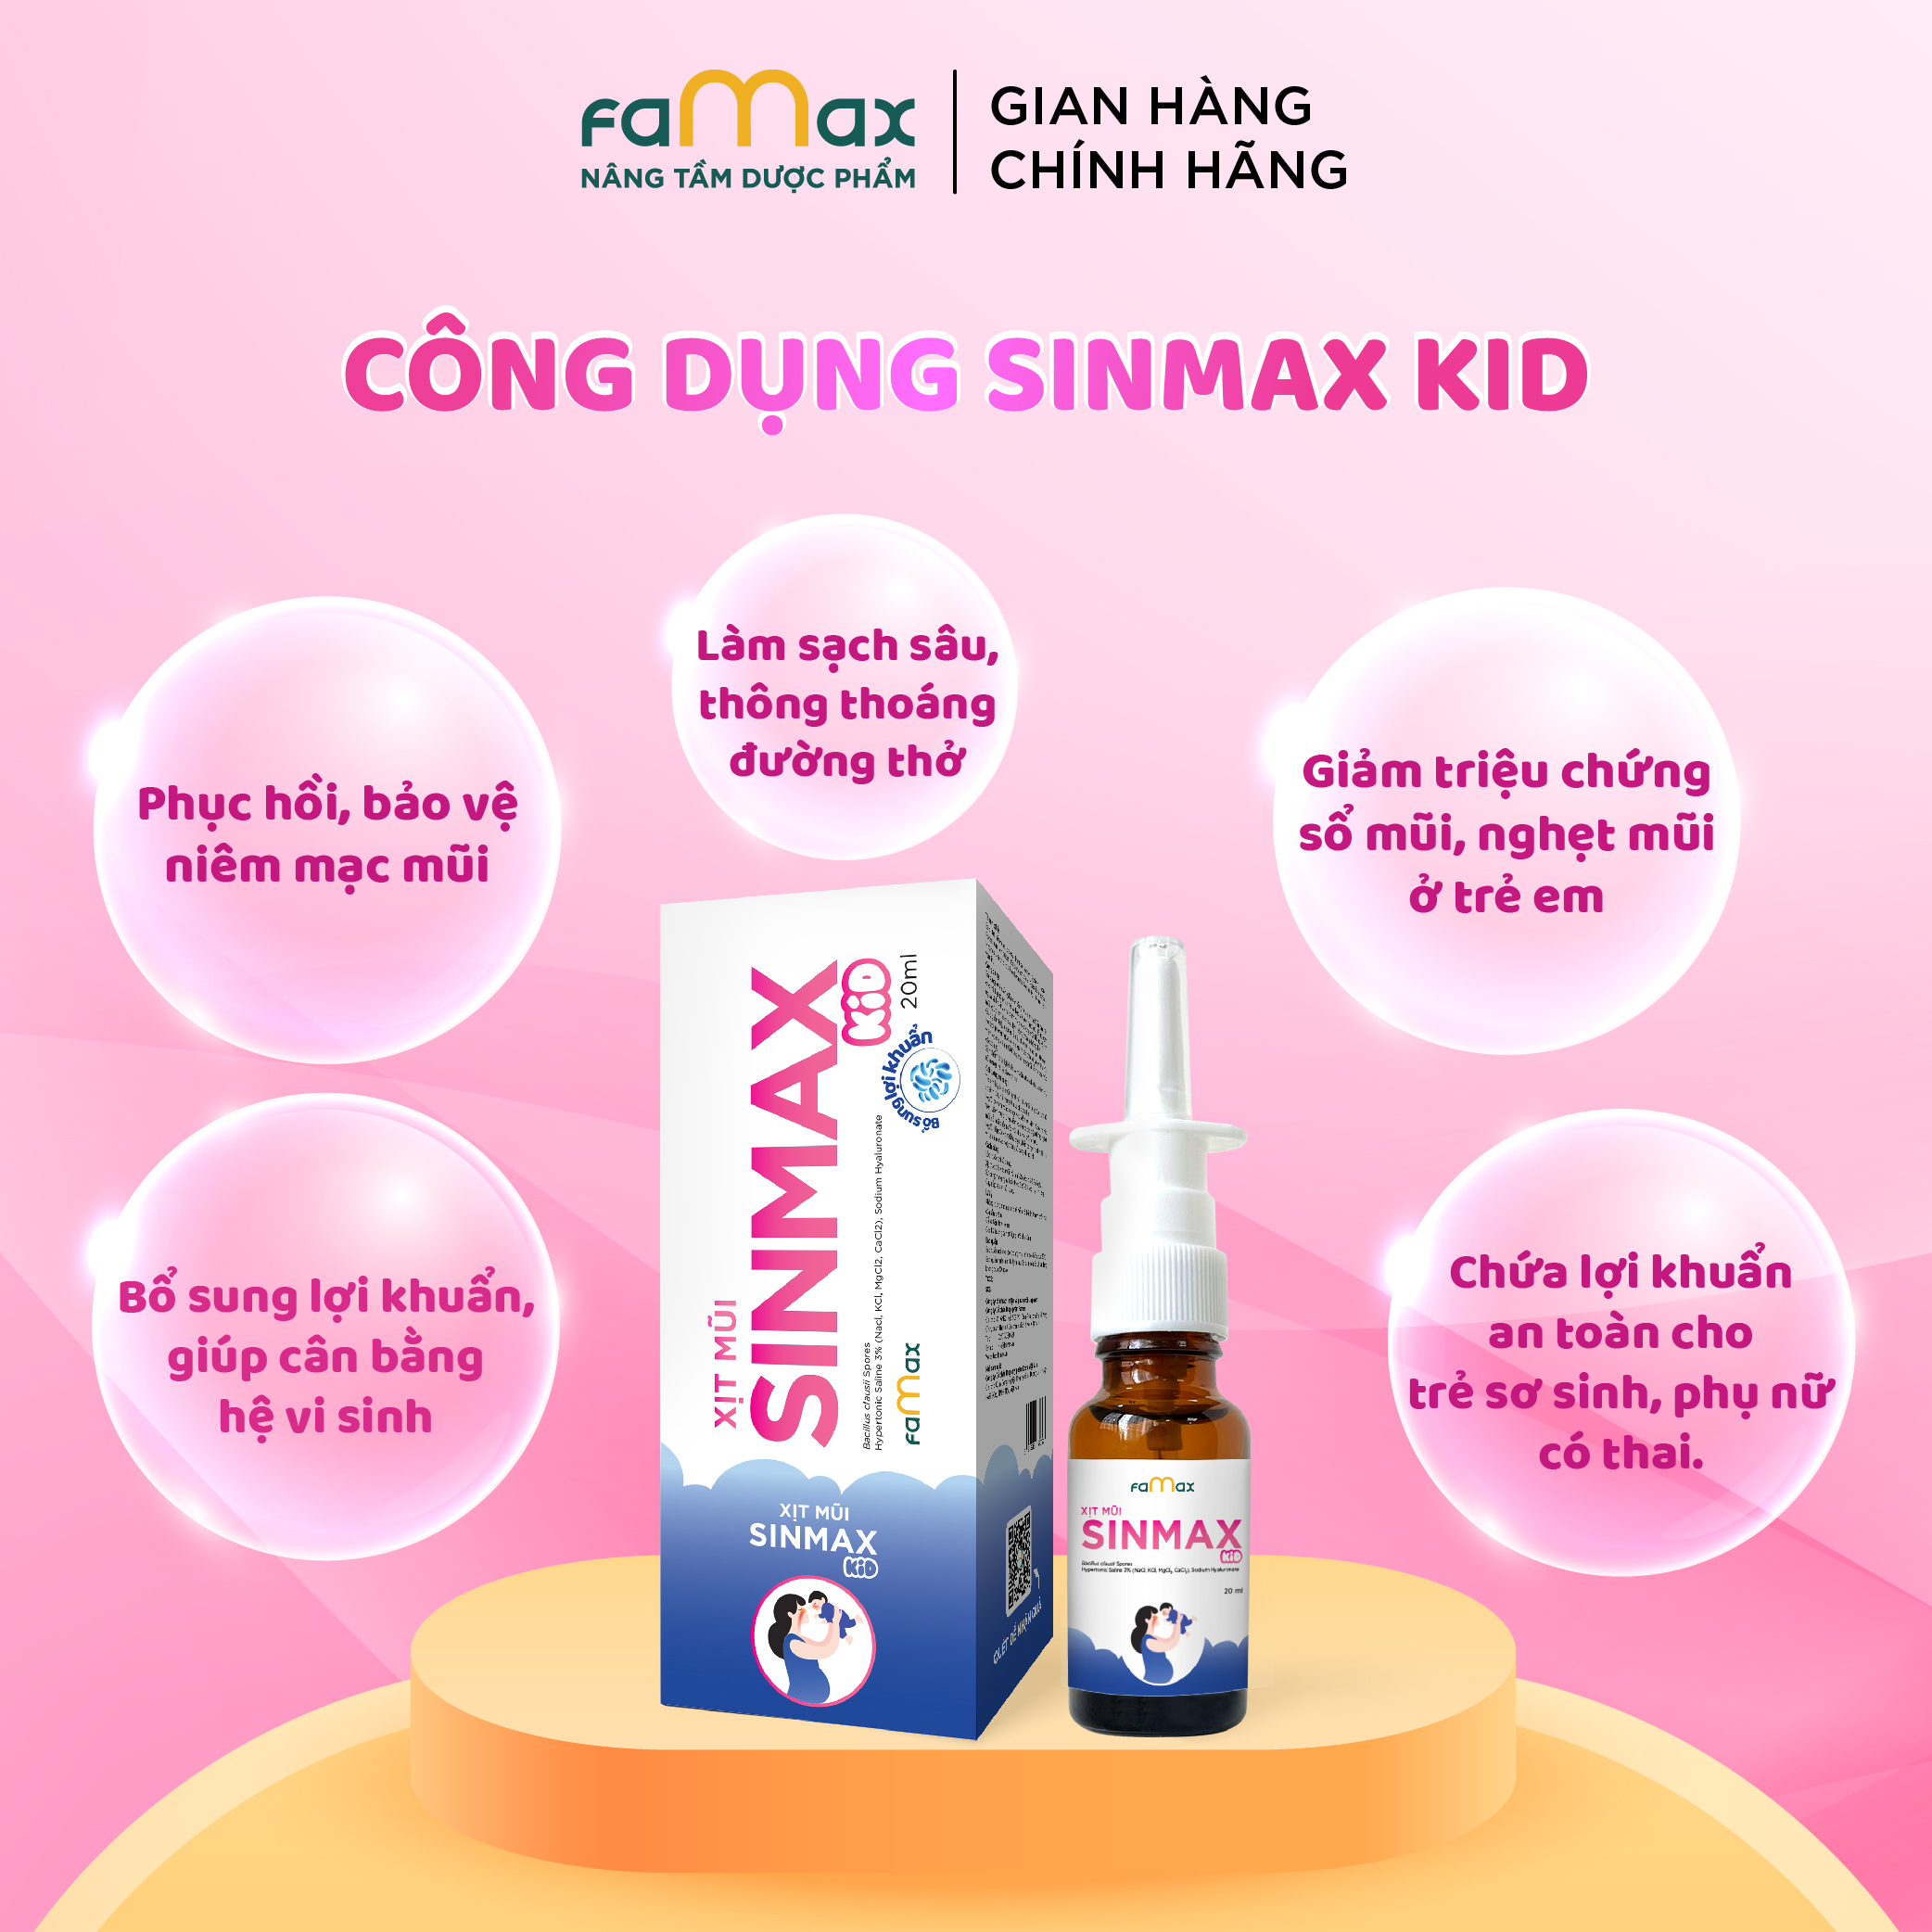 Xịt mũi Sinmax Kid (20ml) dành cho trẻ nhỏ hỗ trợ giảm sổ, nghẹt, viêm mũi, viêm xoang